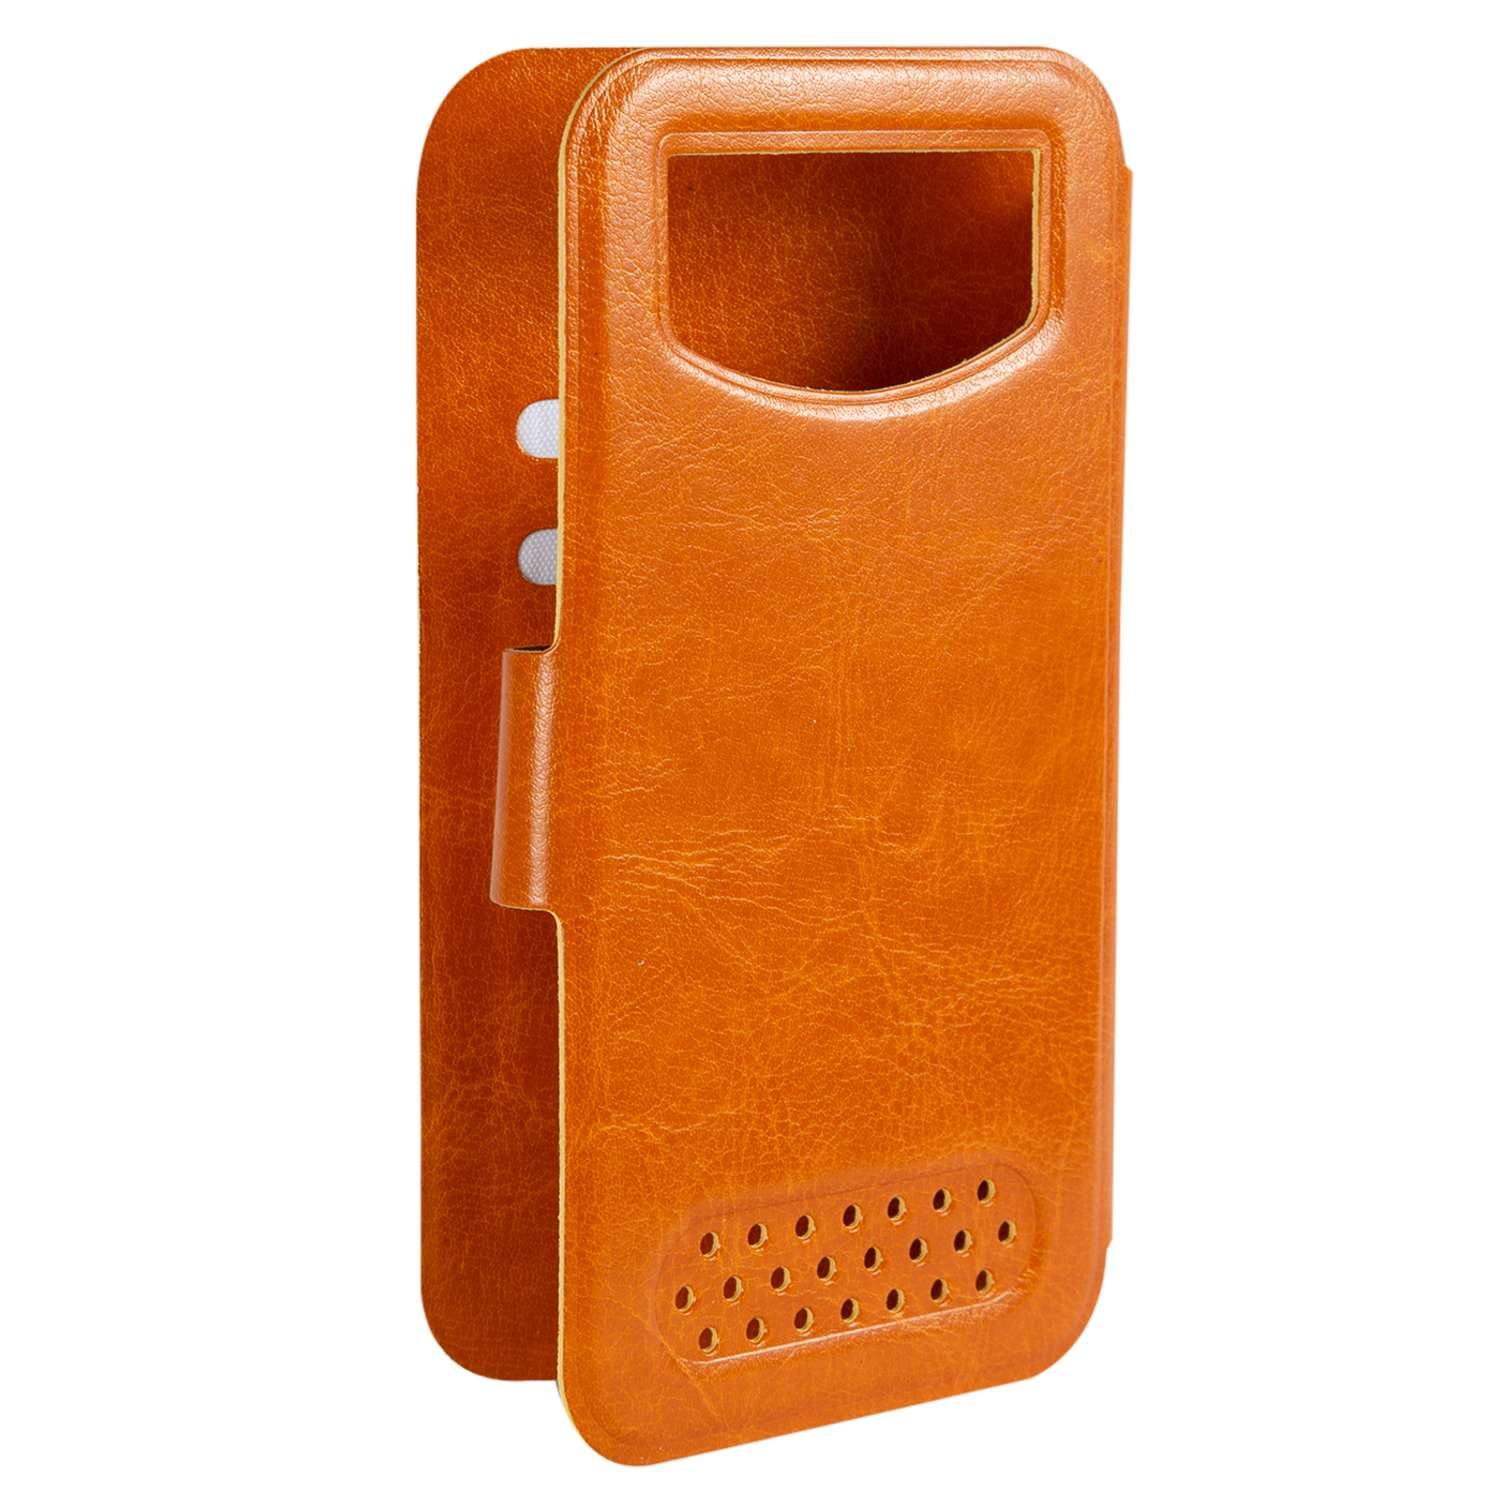 Чехол универсальный iBox Universal для телефонов 4.2-5 дюйма оранжевый - фото 4